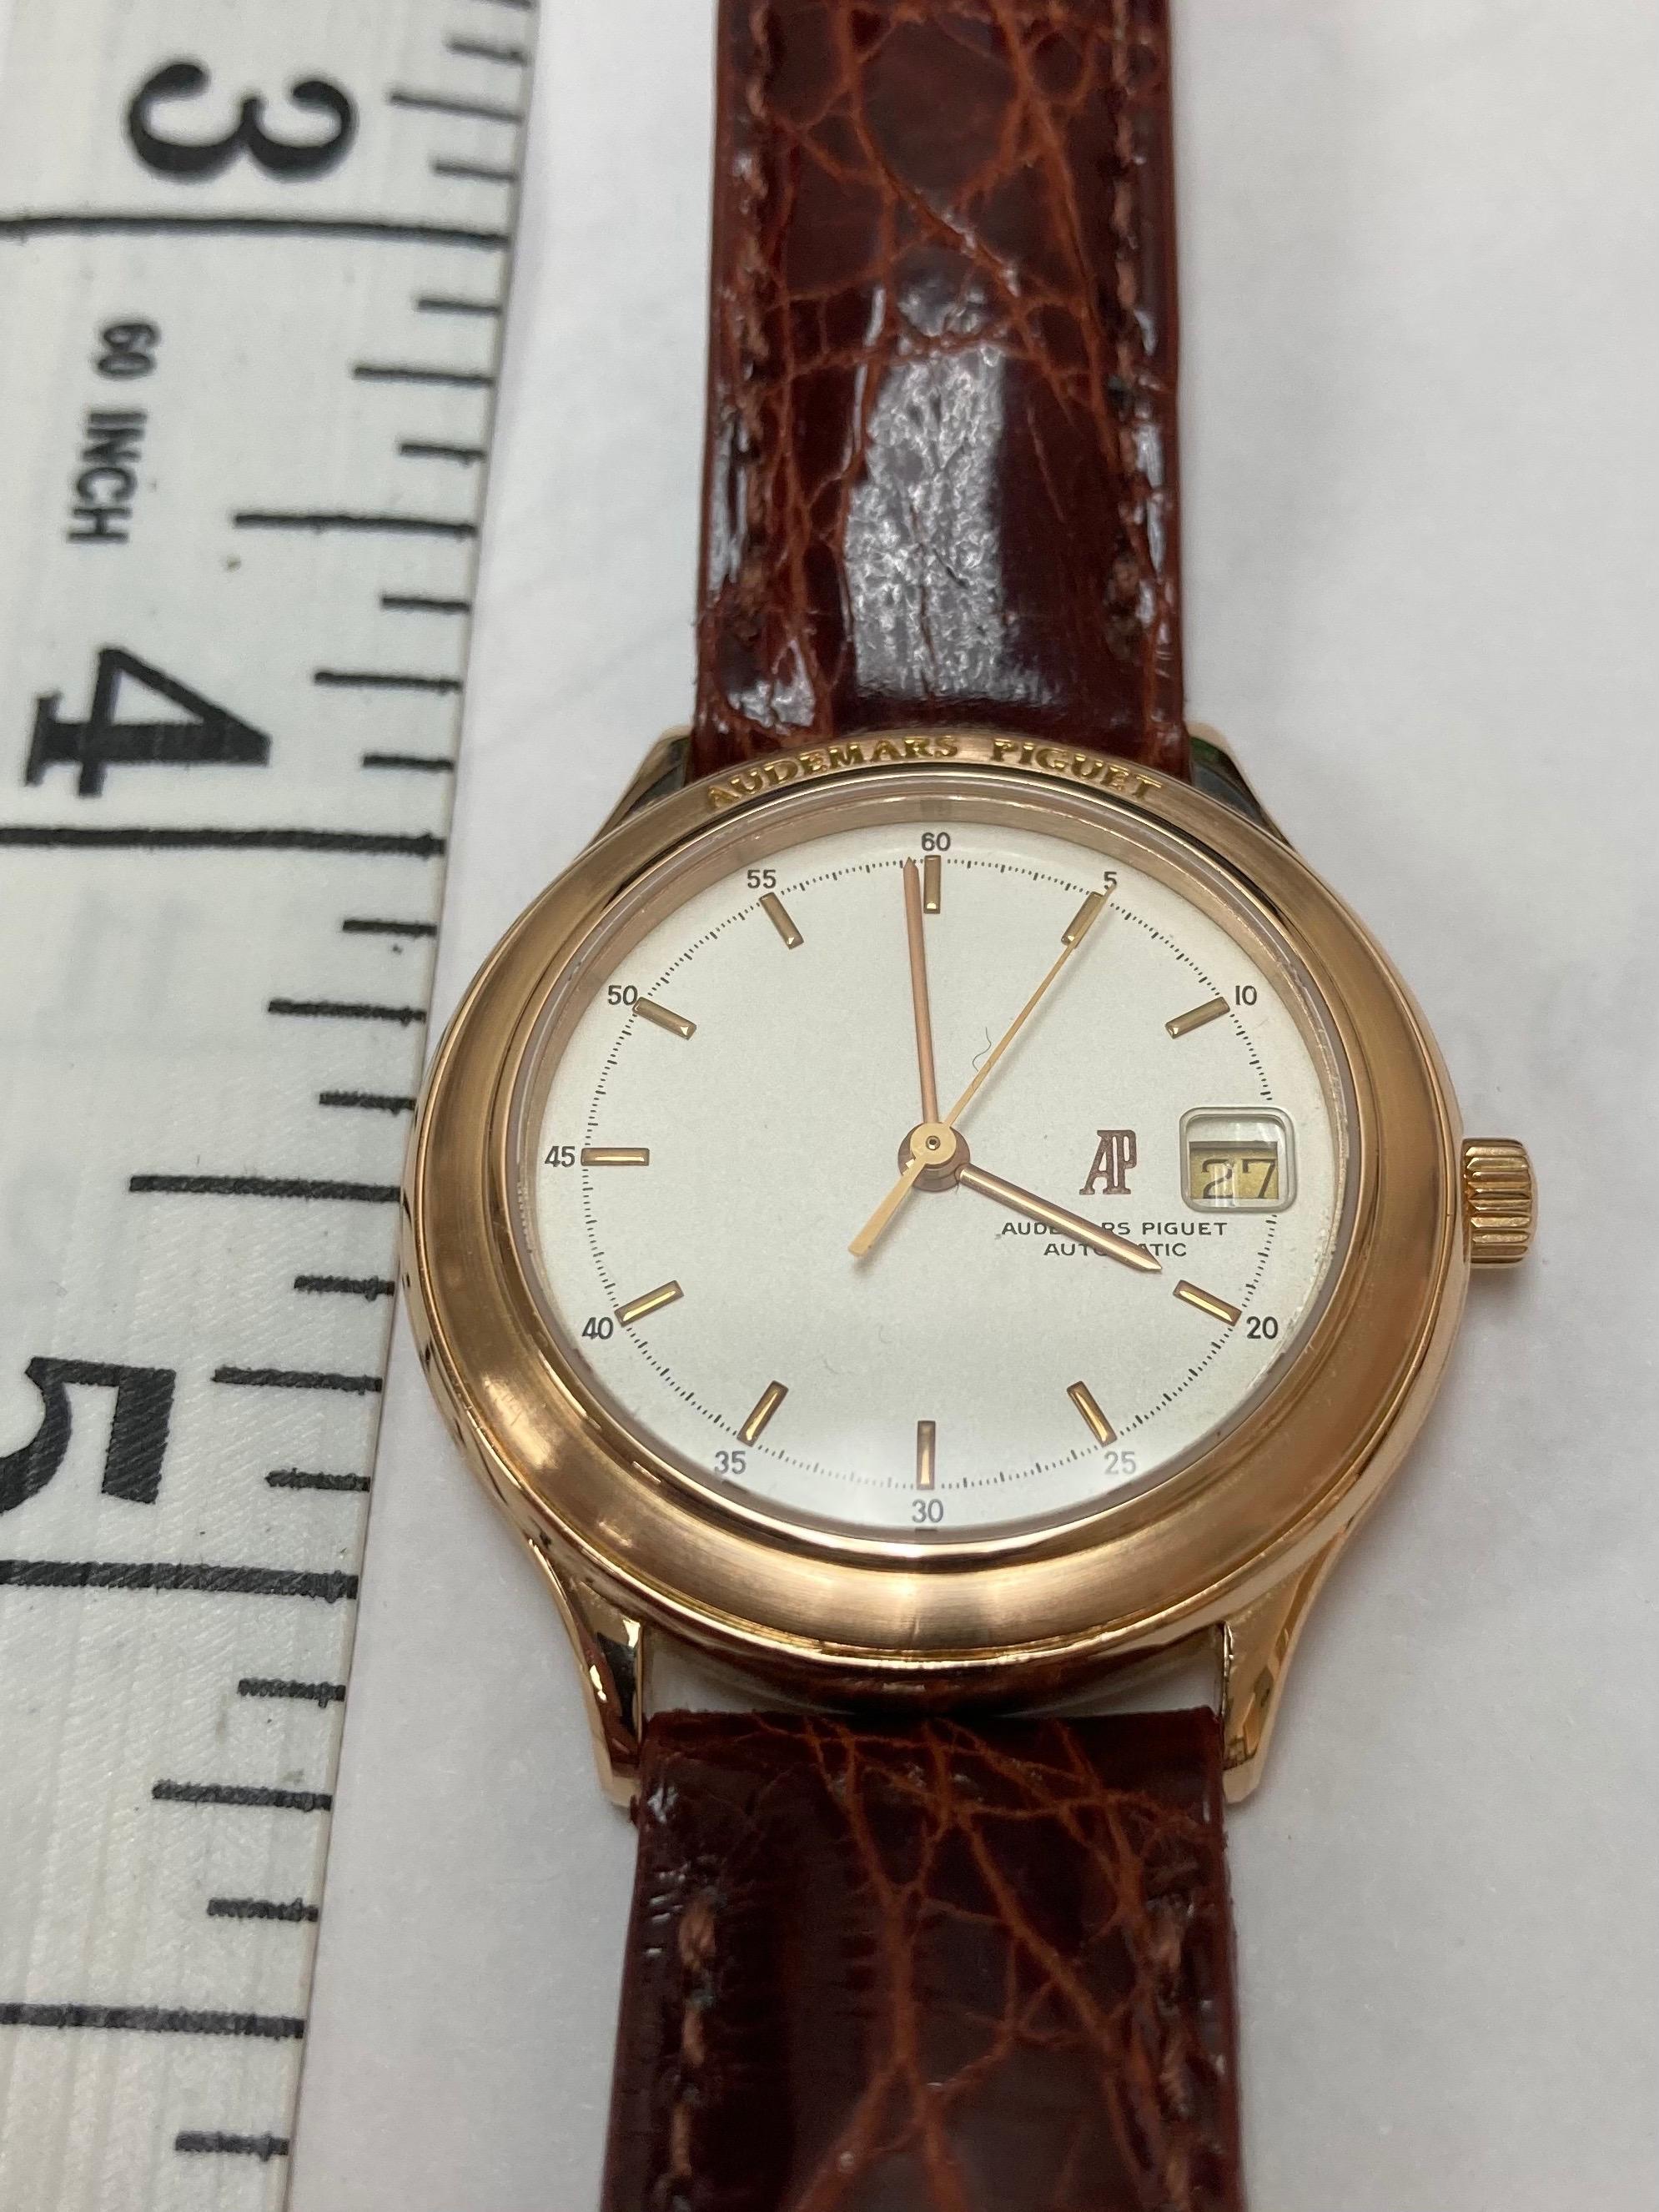 Contemporary Audemars Piguet Automatic Date Pink Gold Watch